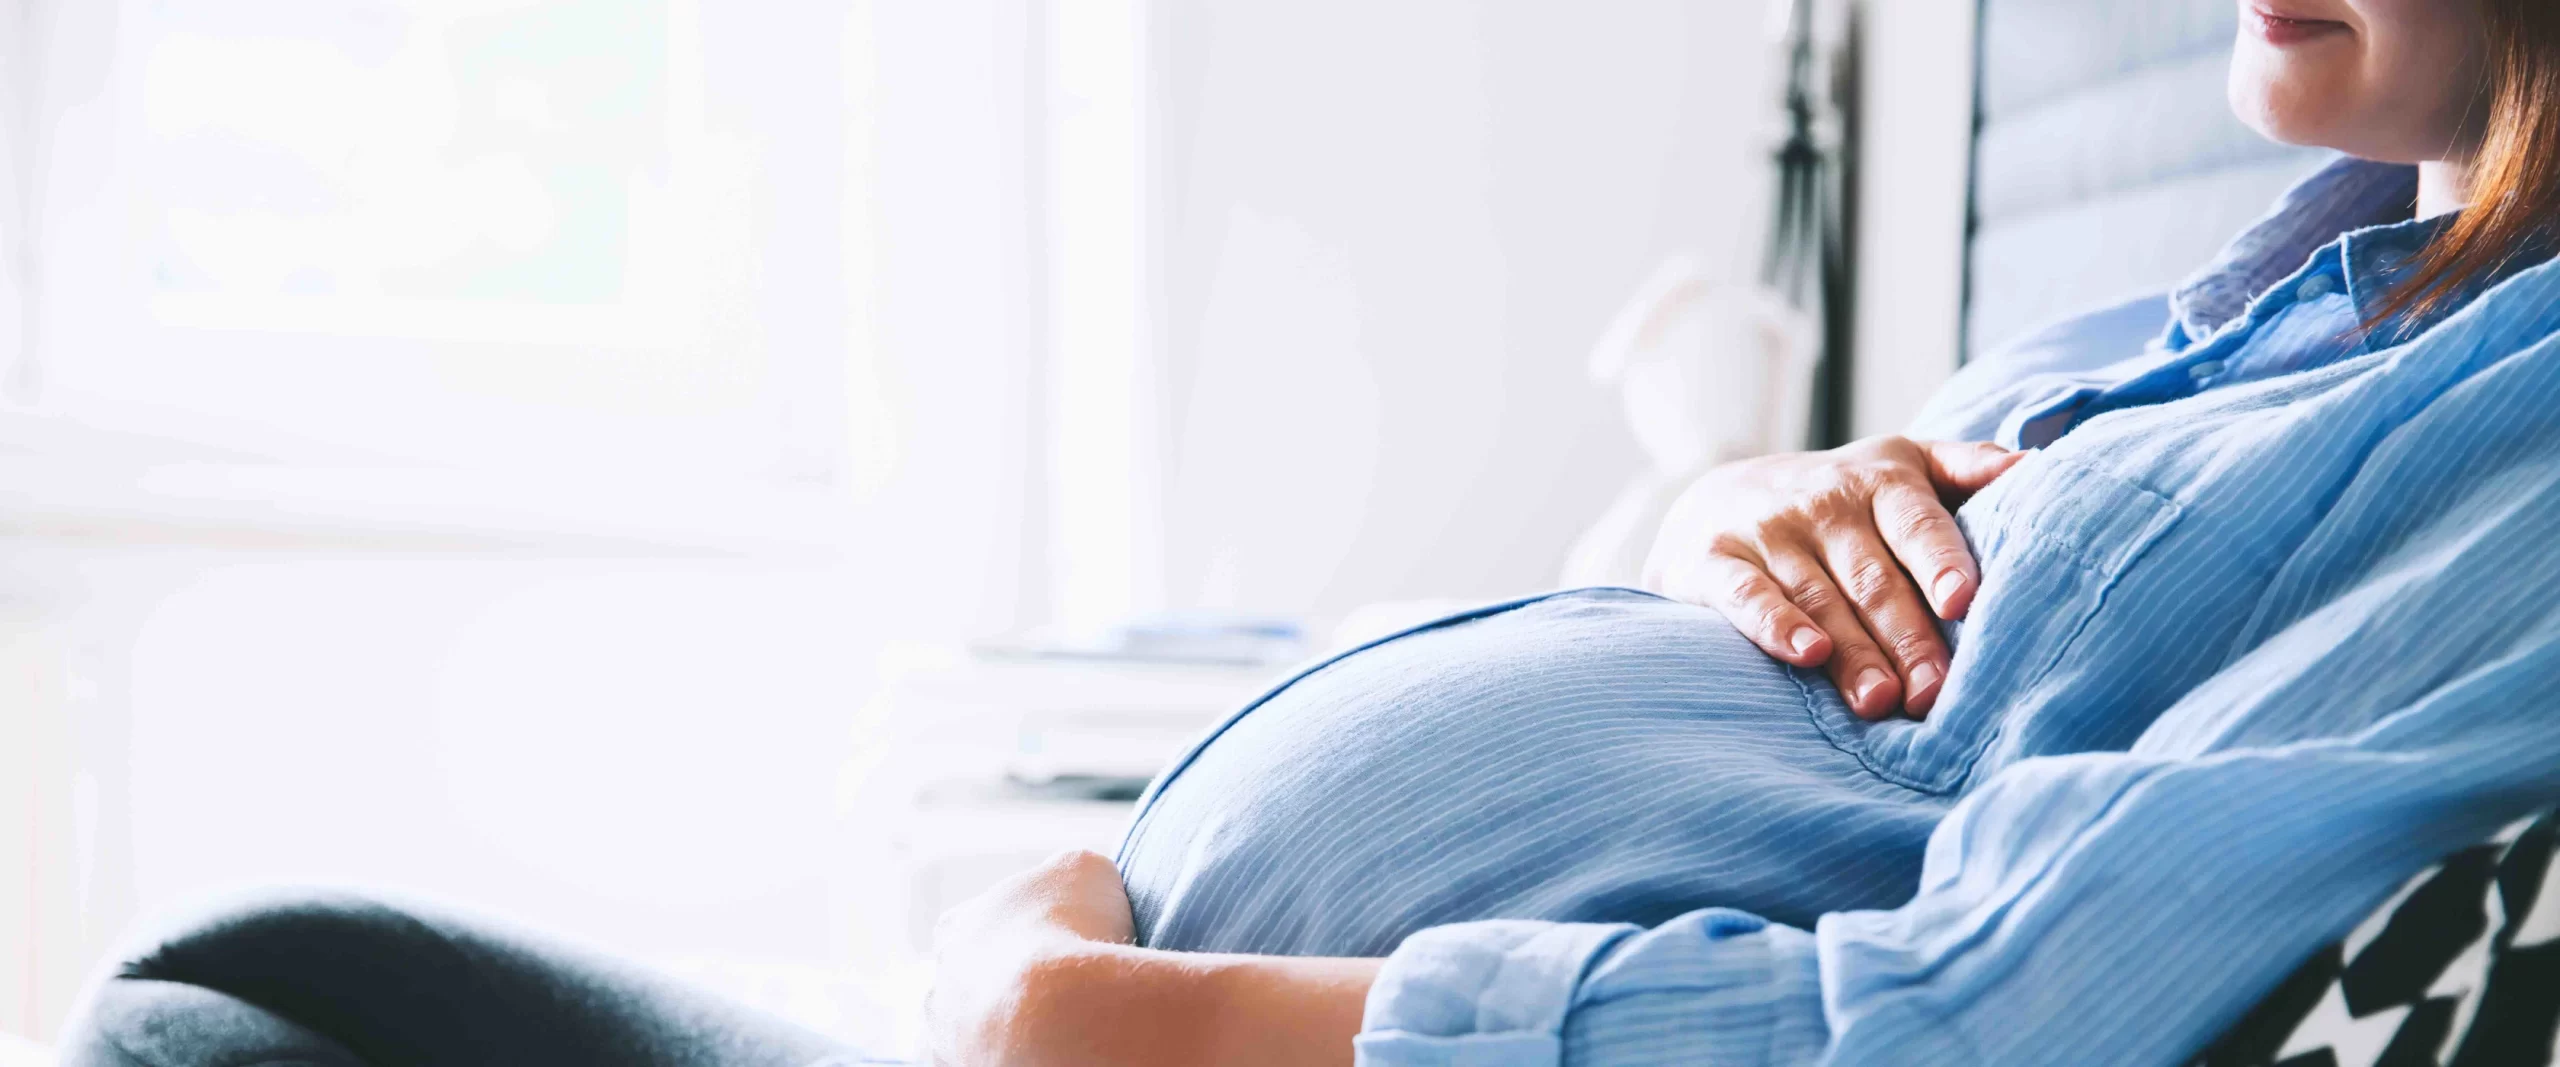 Diabetic pregnant covid 1 pc Natalia Deriabina scaled دراسة: أدوية الستاتينات المخفضة للكوليسترول تبدو آمنة على الحوامل مجلة نقطة العلمية